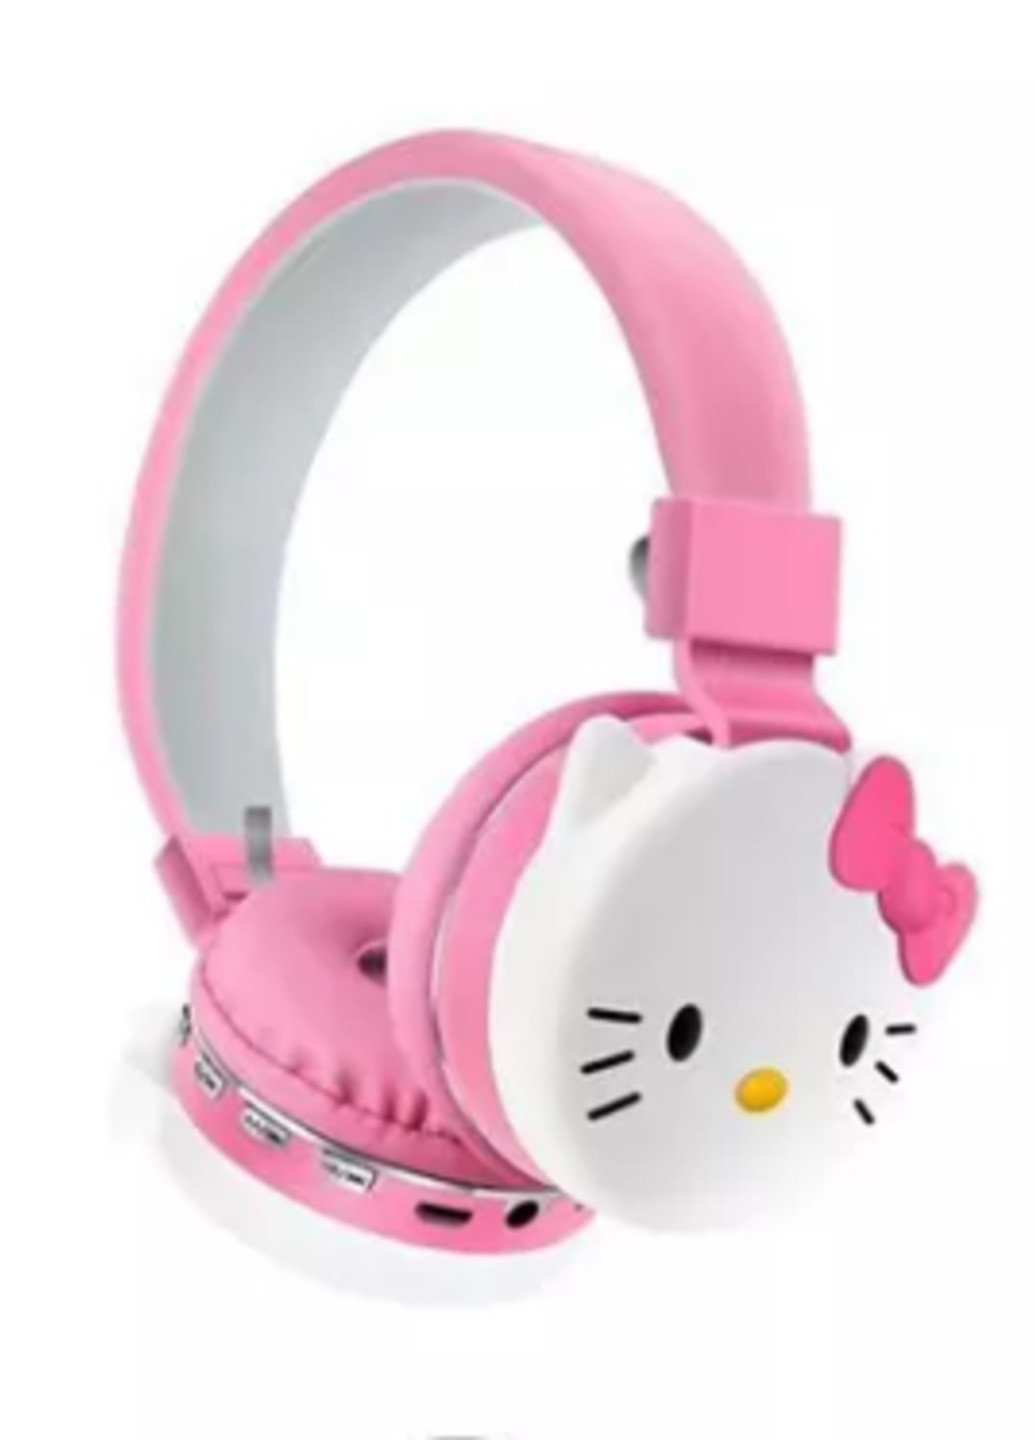 Бездротові дитячі навушники "Hello Kitty" Margo ah-806d (266903868)